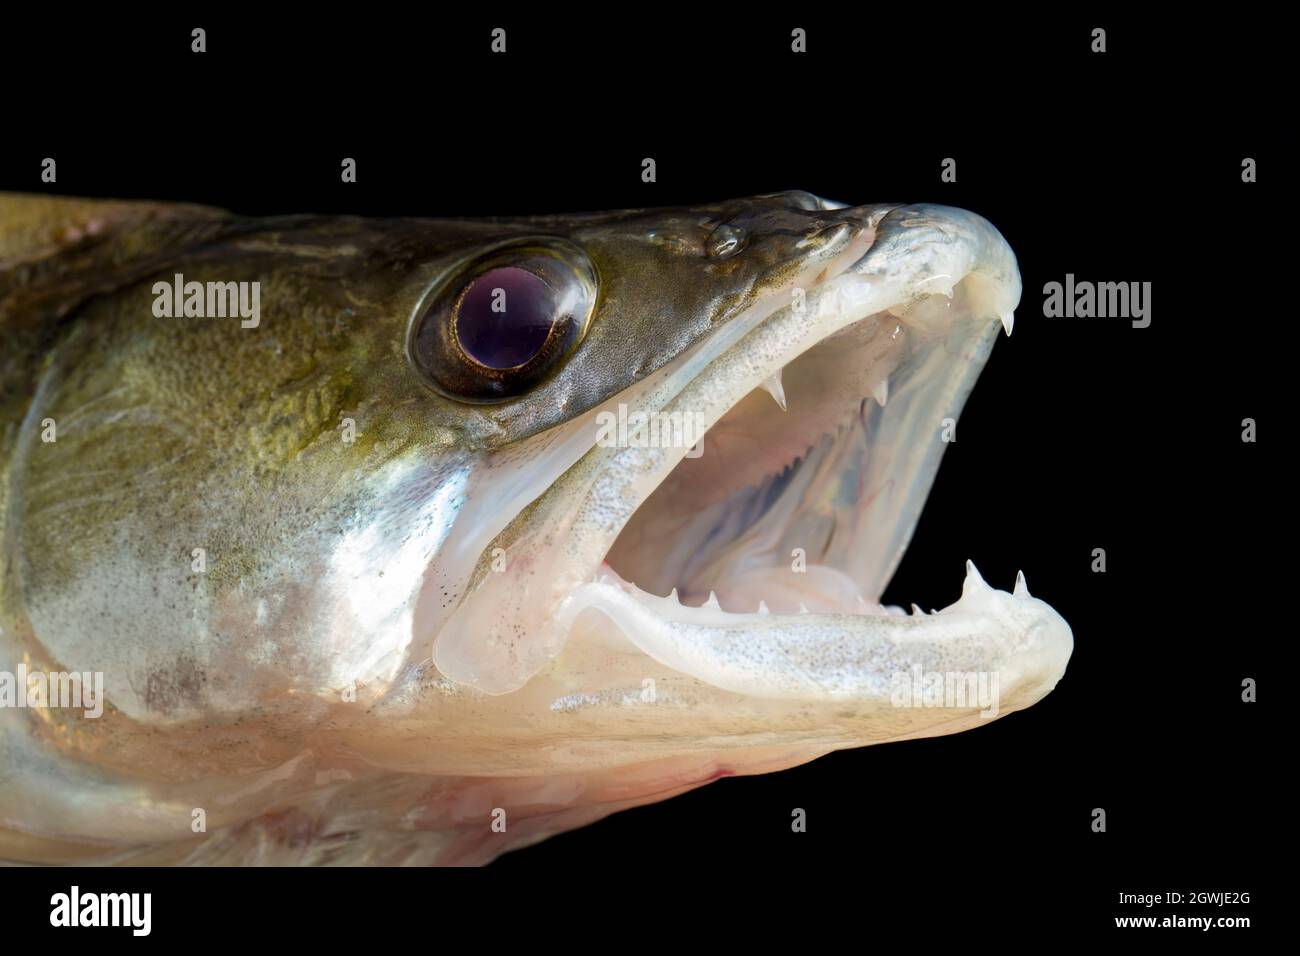 La cabeza y las mandíbulas de un Zander, Sander lucioperca. Zander es una especie depredadora que predica sobre otros peces. Son una especie invasora no nativa en t Foto de stock